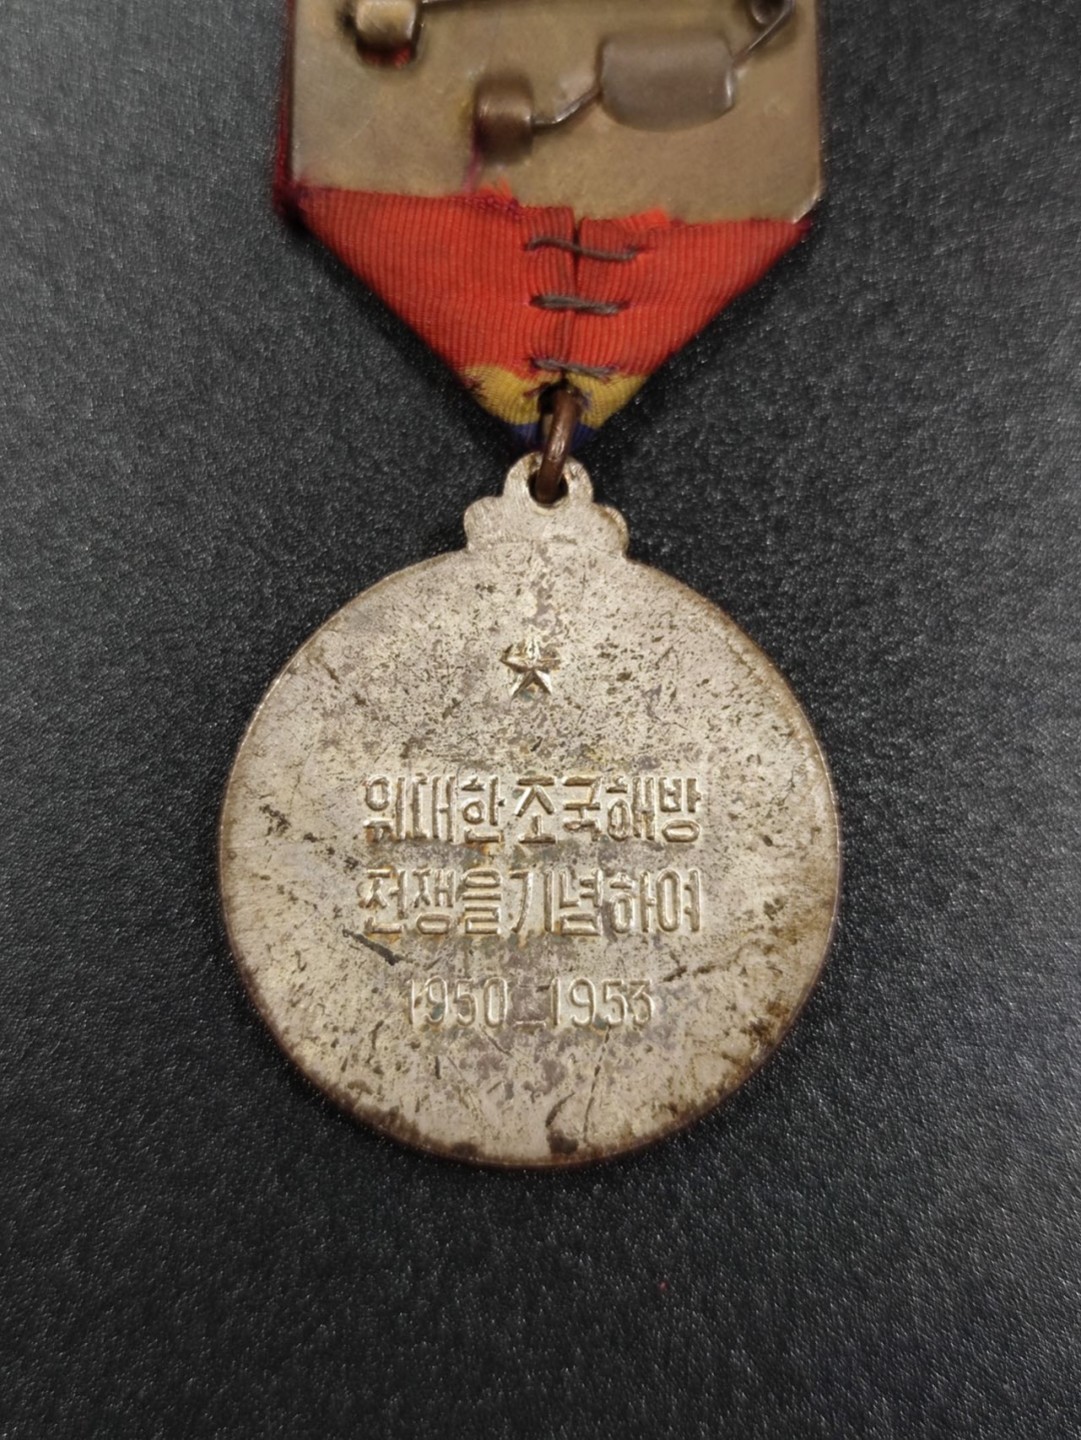 朝鲜祖国解放战争纪念奖章